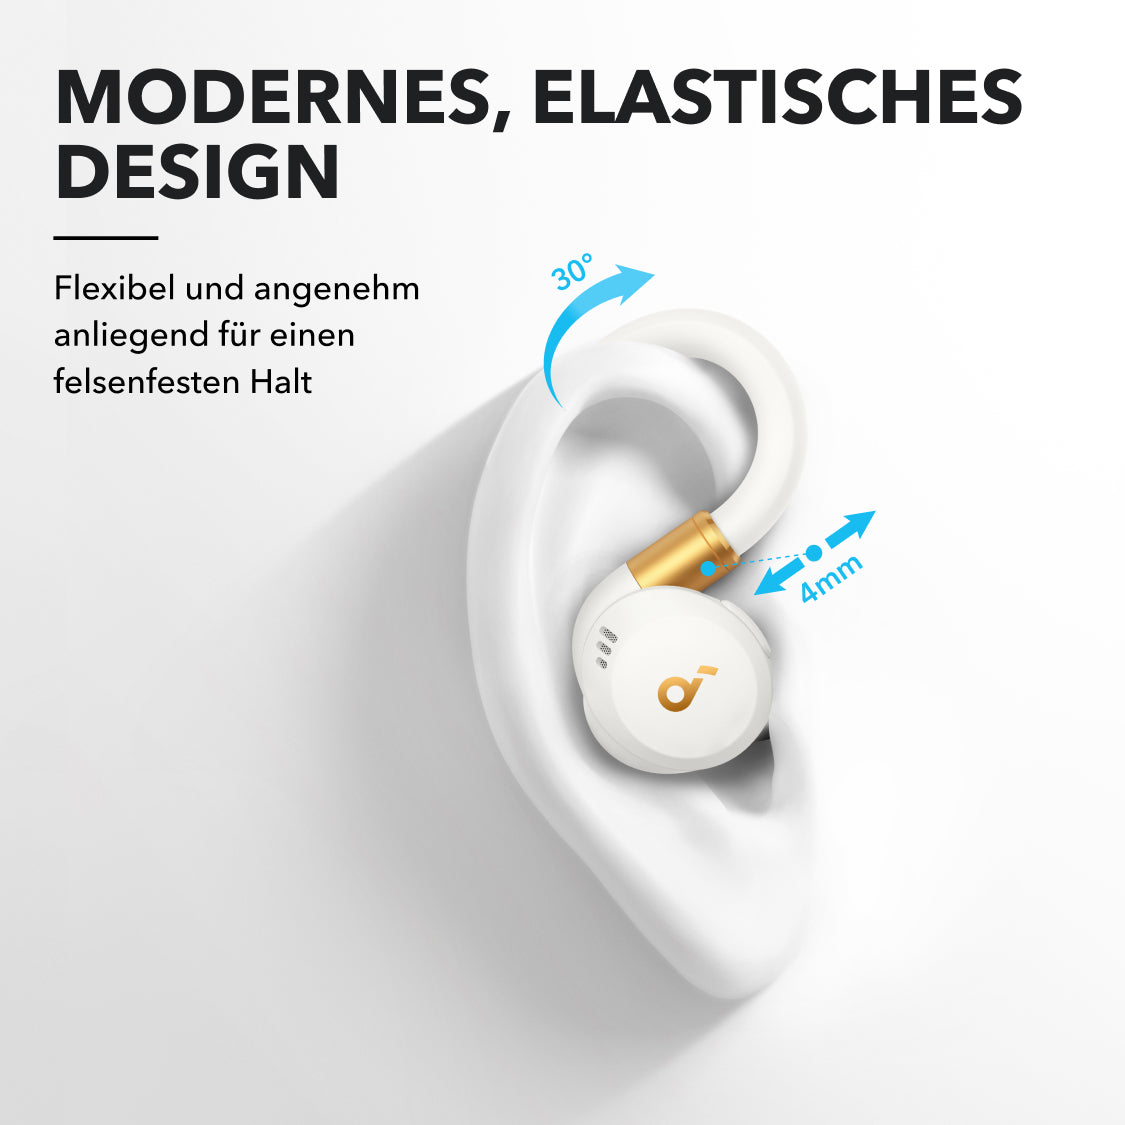 Sport X20 | Bequeme In-Ear Sport Earbuds mit Ohrhaken